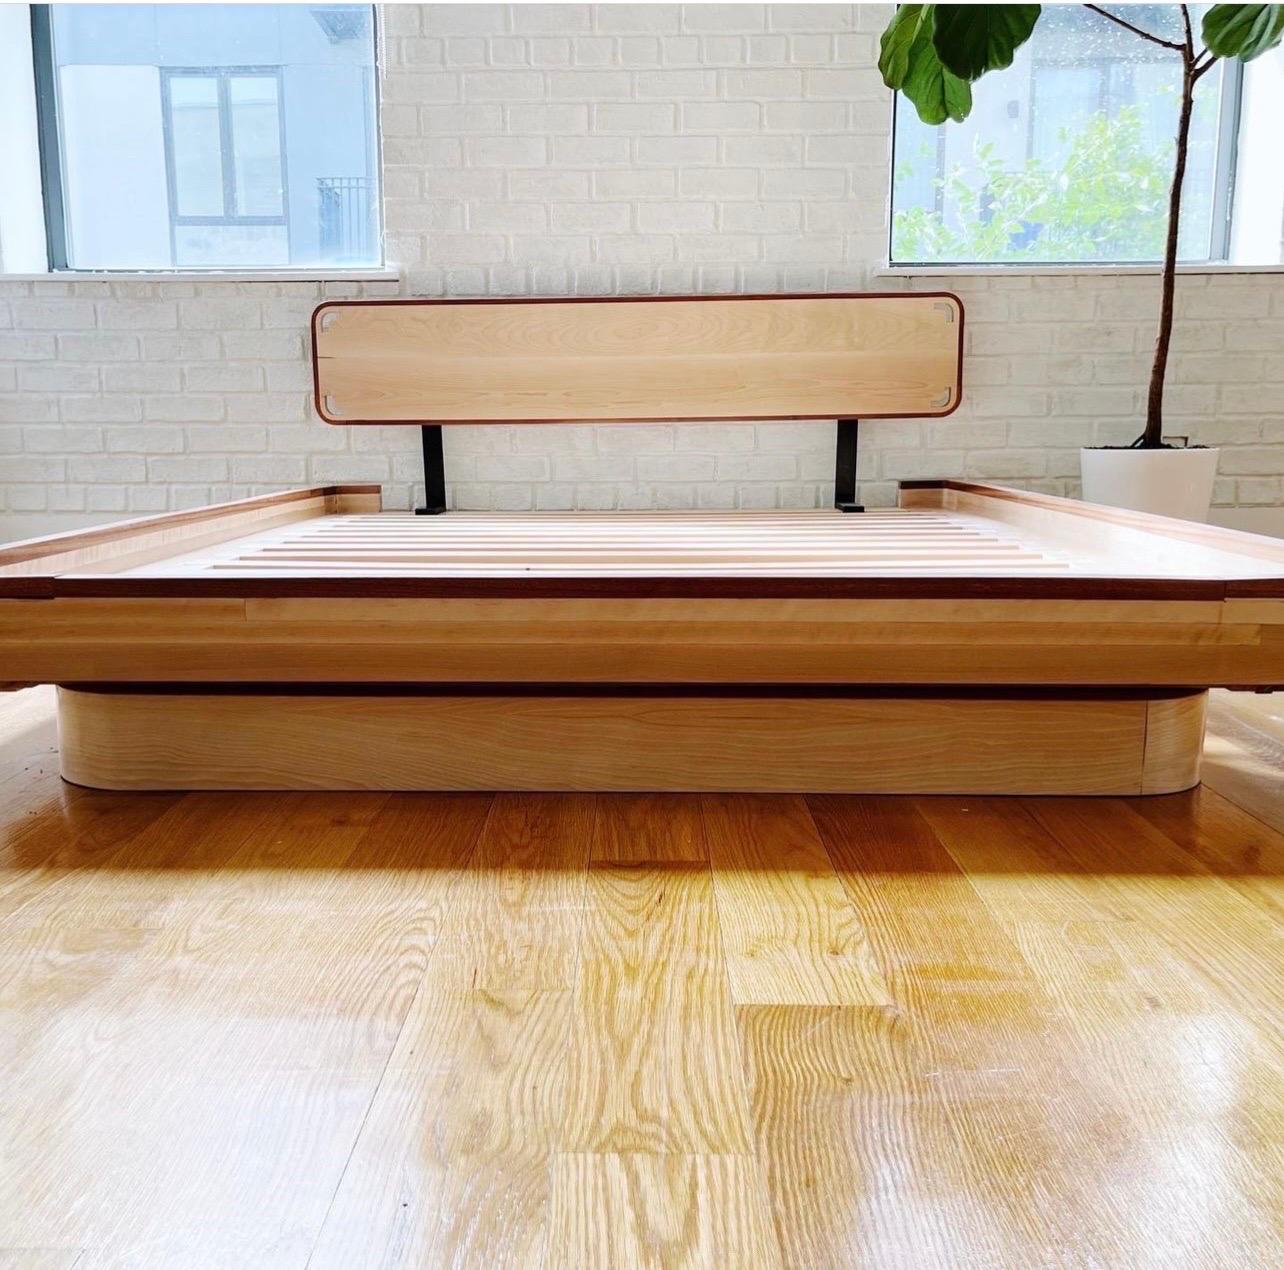 Ich bin ein in Brooklyn ansässiger Möbeldesigner. Ich habe dieses Bett mit Blick auf die Natur entworfen. Inspiriert von den weichen Kurven der Natur. Das Bett ist kräftig, aber nicht übermächtig. Es ist eine großartige Ergänzung für jedes